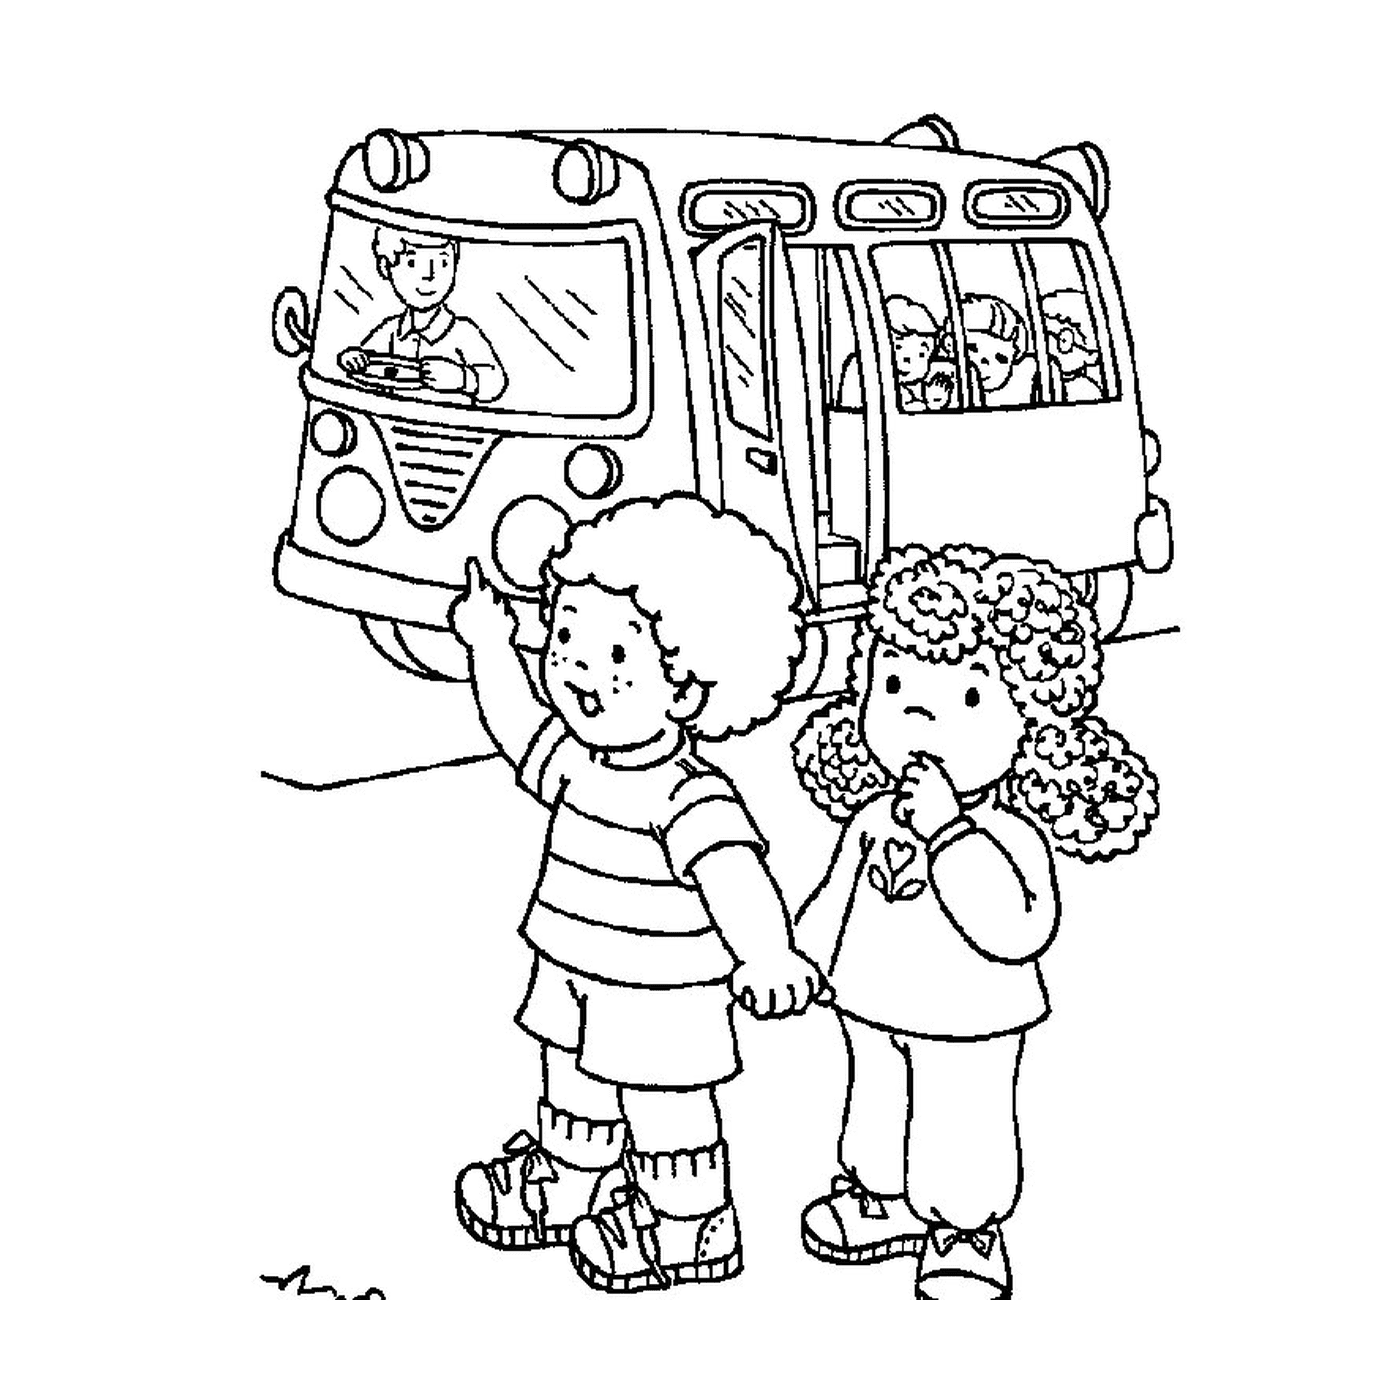  Двое детей перед школьным автобусом 